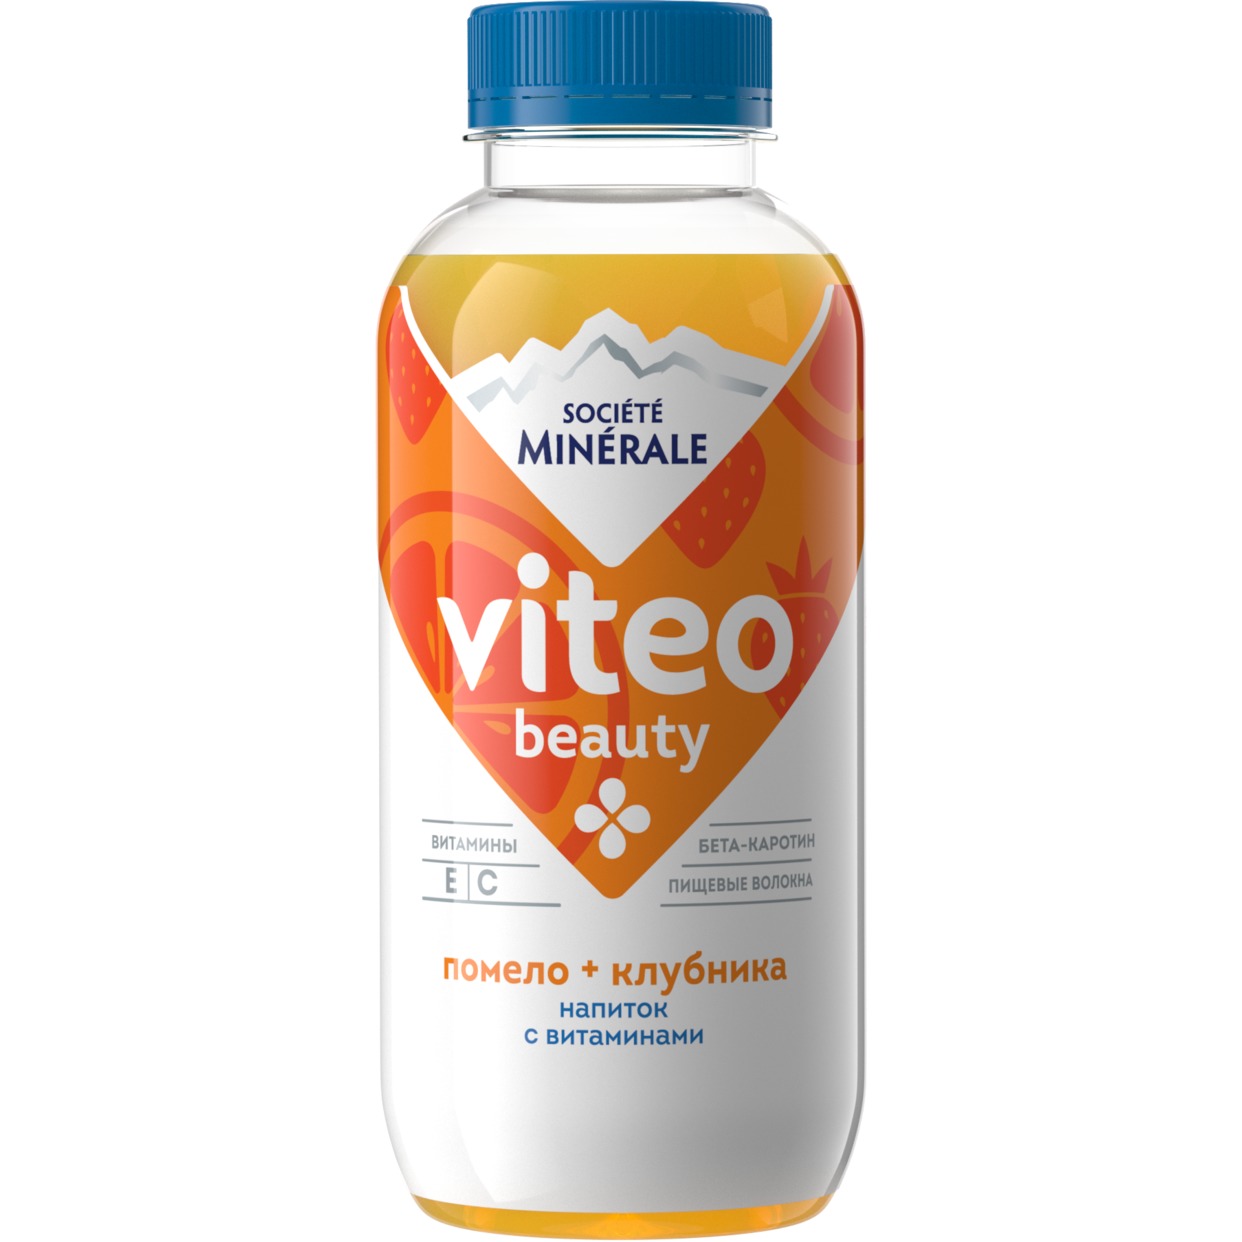 Напиток безалкогольный негазированный торговой марки «Societe Minerale Viteo» с витаминами вкус помело-клубника, 0,4